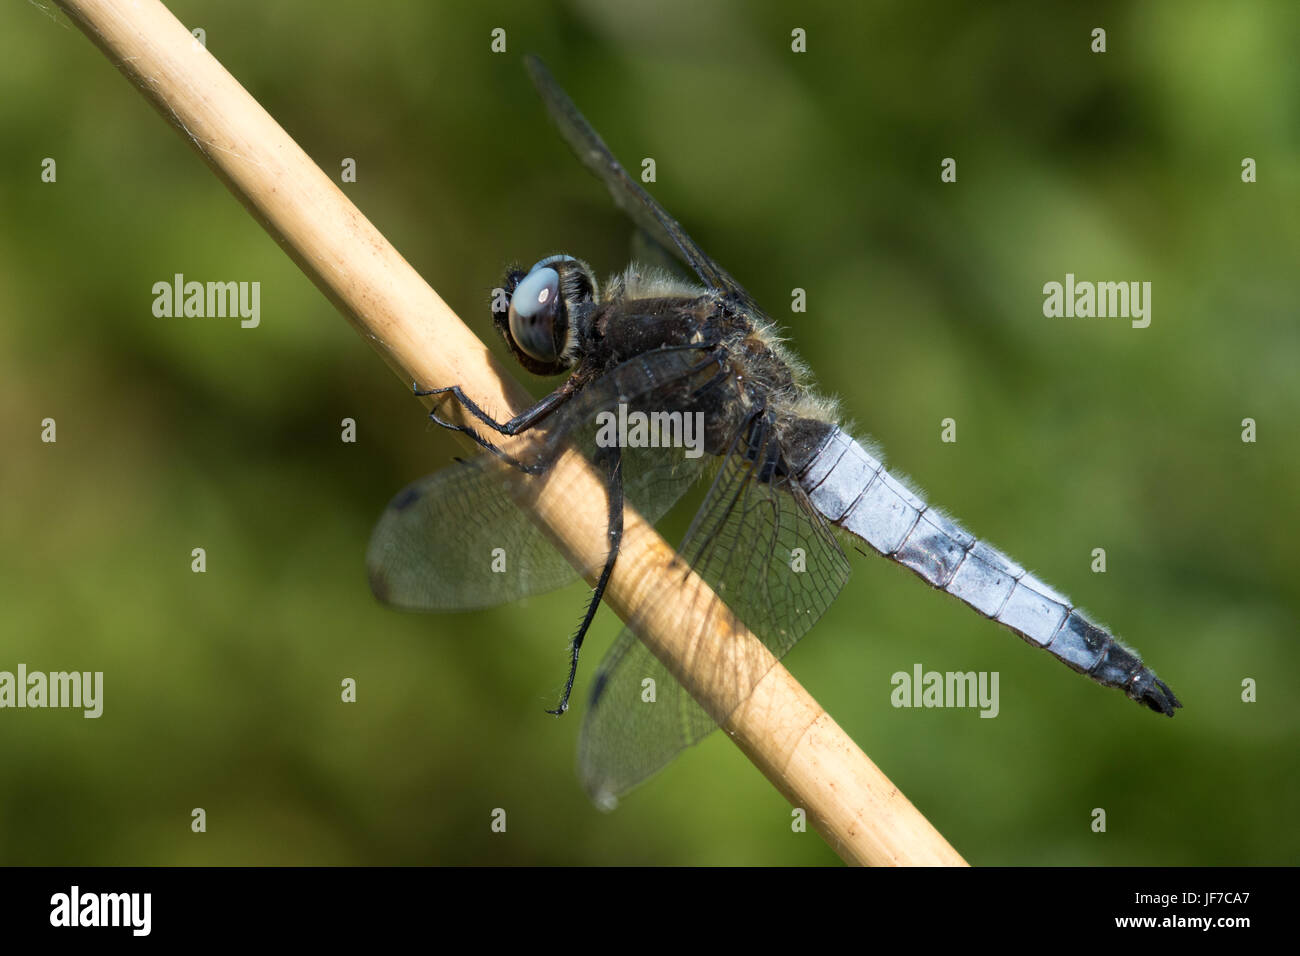 Les rares hommes Chaser (Libellula fulva) dragonfly perché sur une tige de la plante morte Banque D'Images